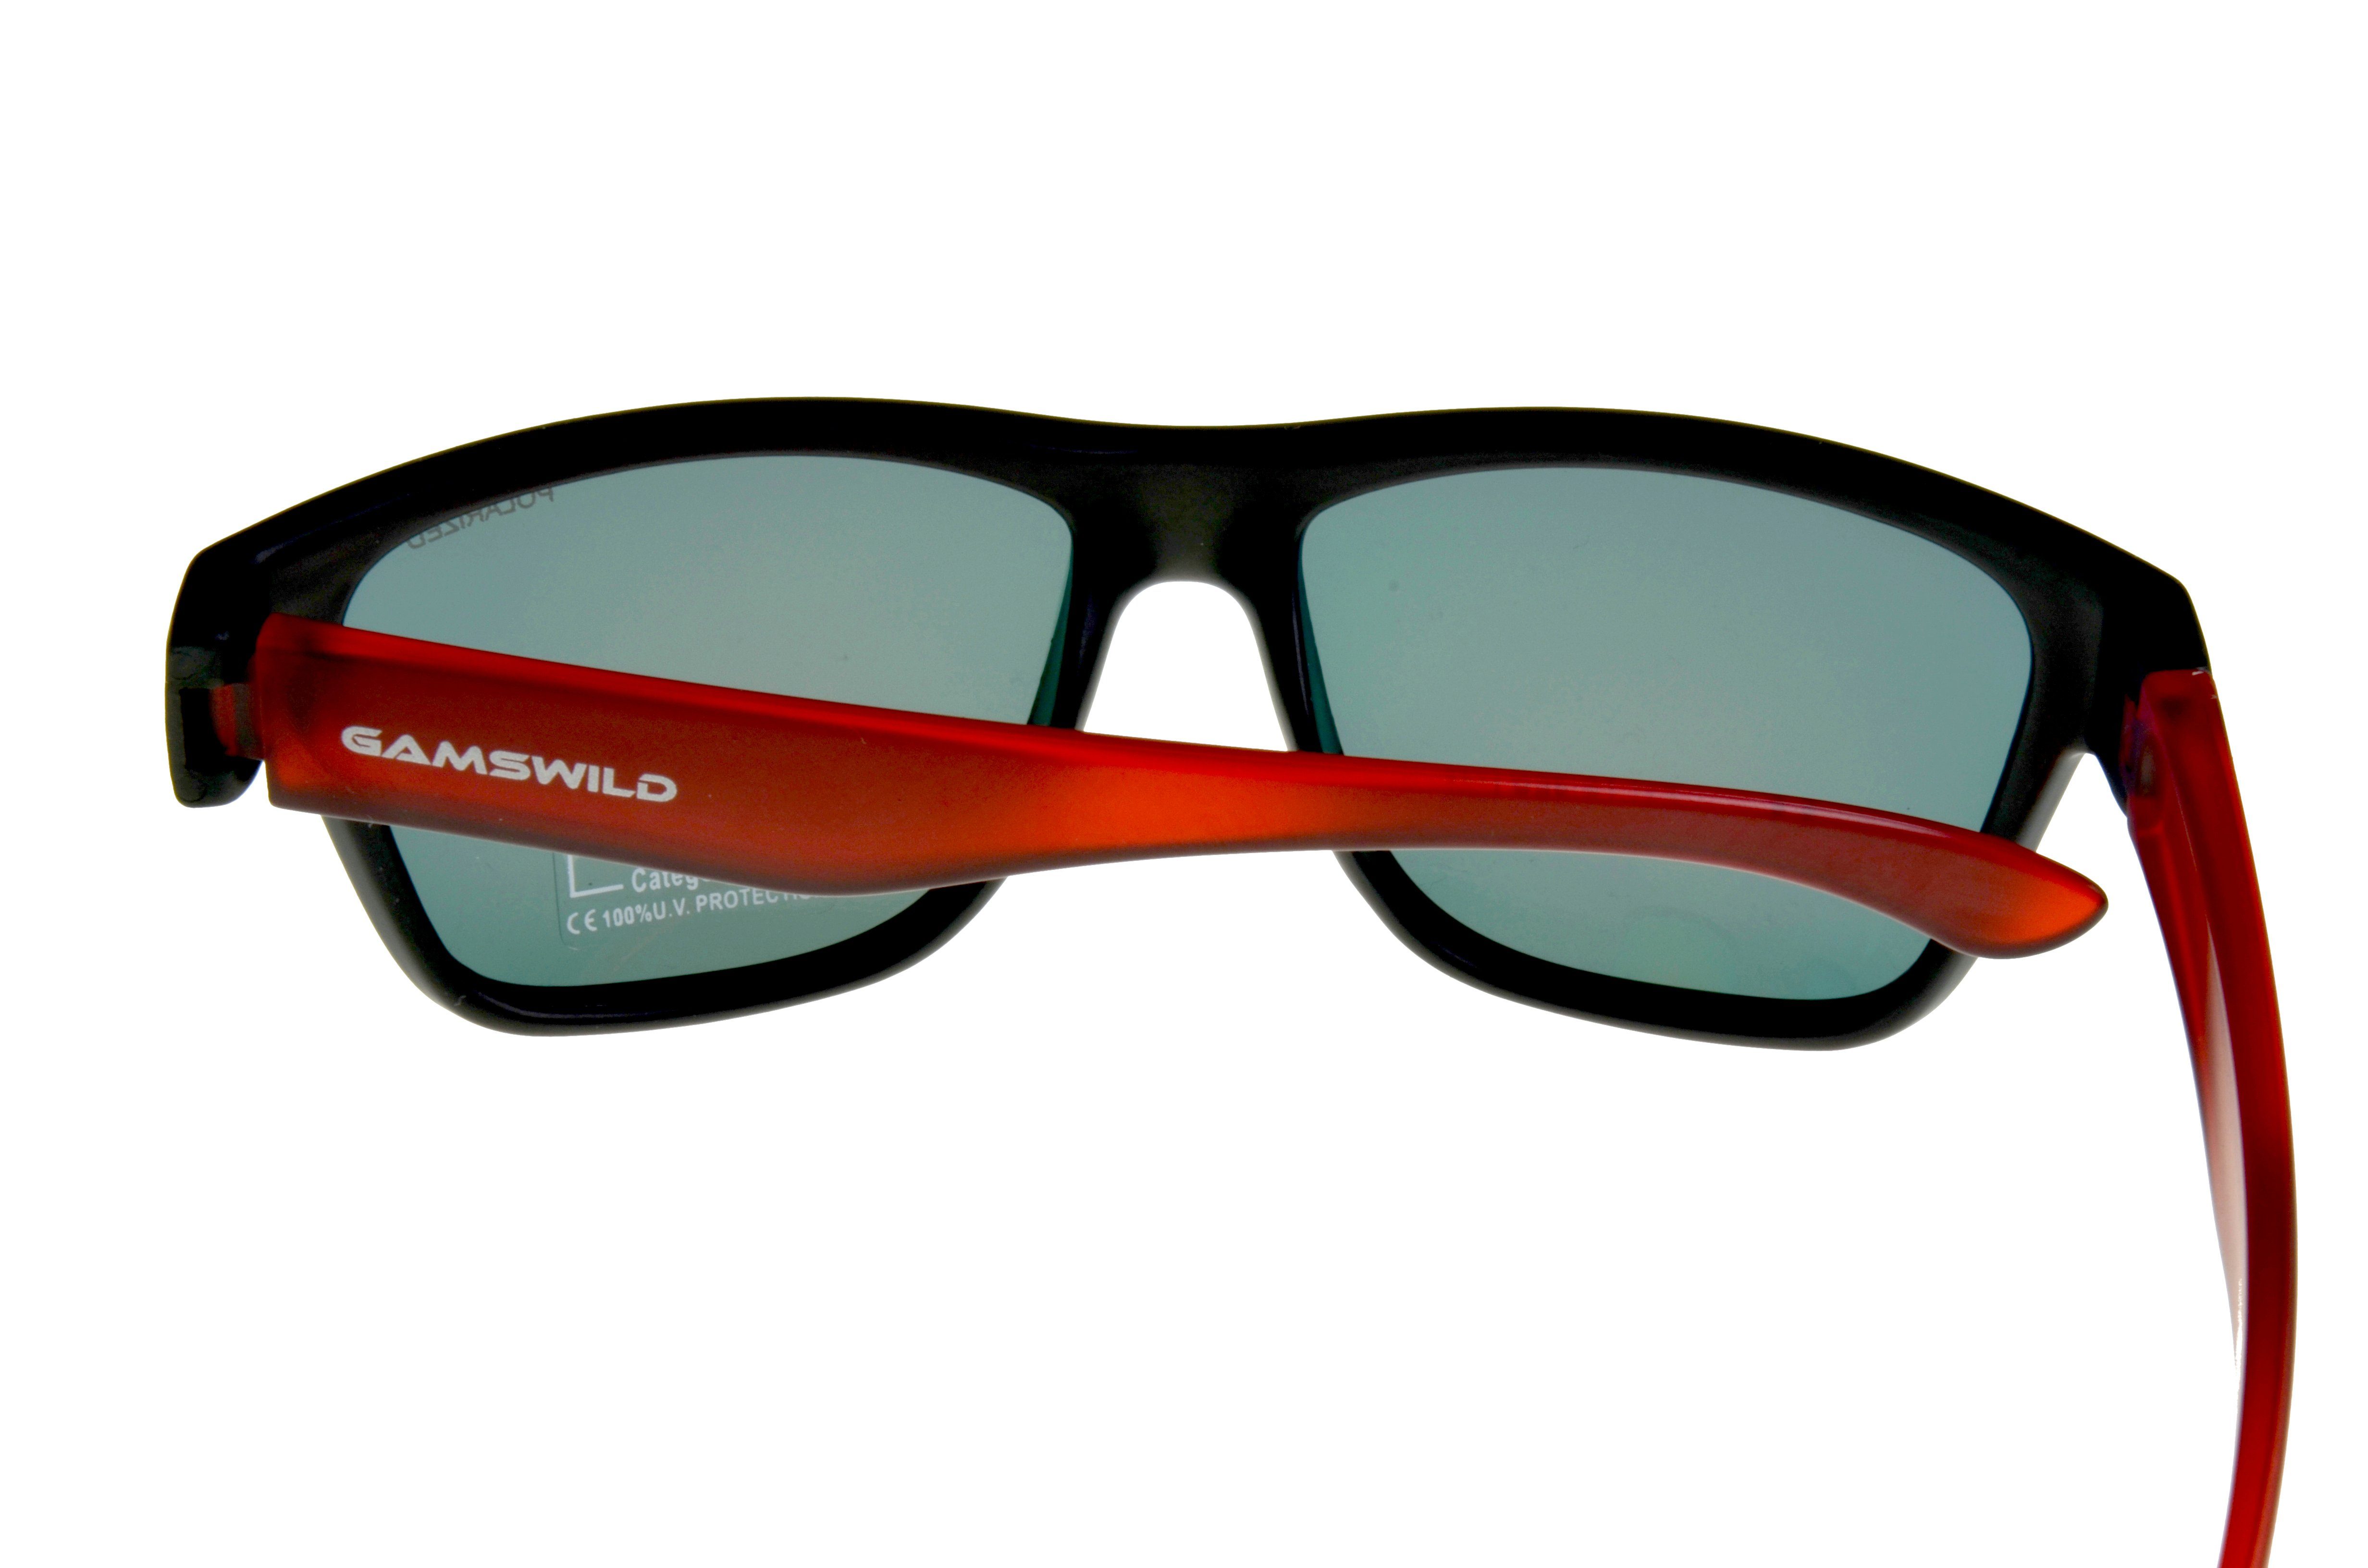 grün, NEU Gläser" 8-18 Gamswild Sonnenbrille Rahmen Kinderbrille Unisex Jugendbrille rot, GAMSKIDS blau halbtransparenter "polarisierte Jahre WJ2118 kids